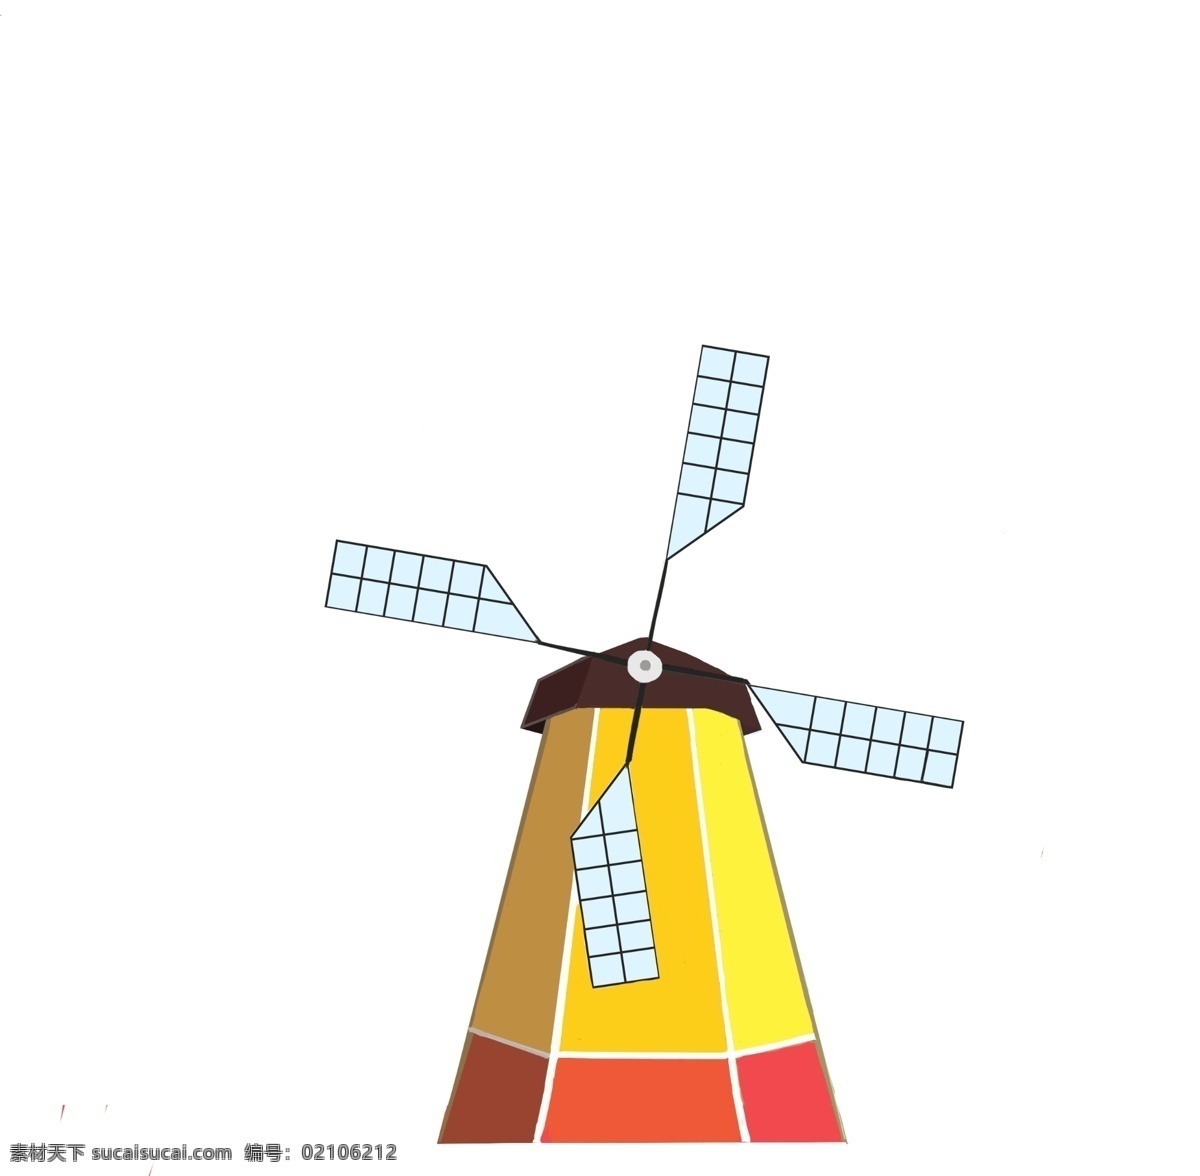 荷兰 黄色 卡通 风车 彩色风车 黄色风车 荷兰风车 三宝乐园 游乐园 建筑 白色风扇插画 建筑插画